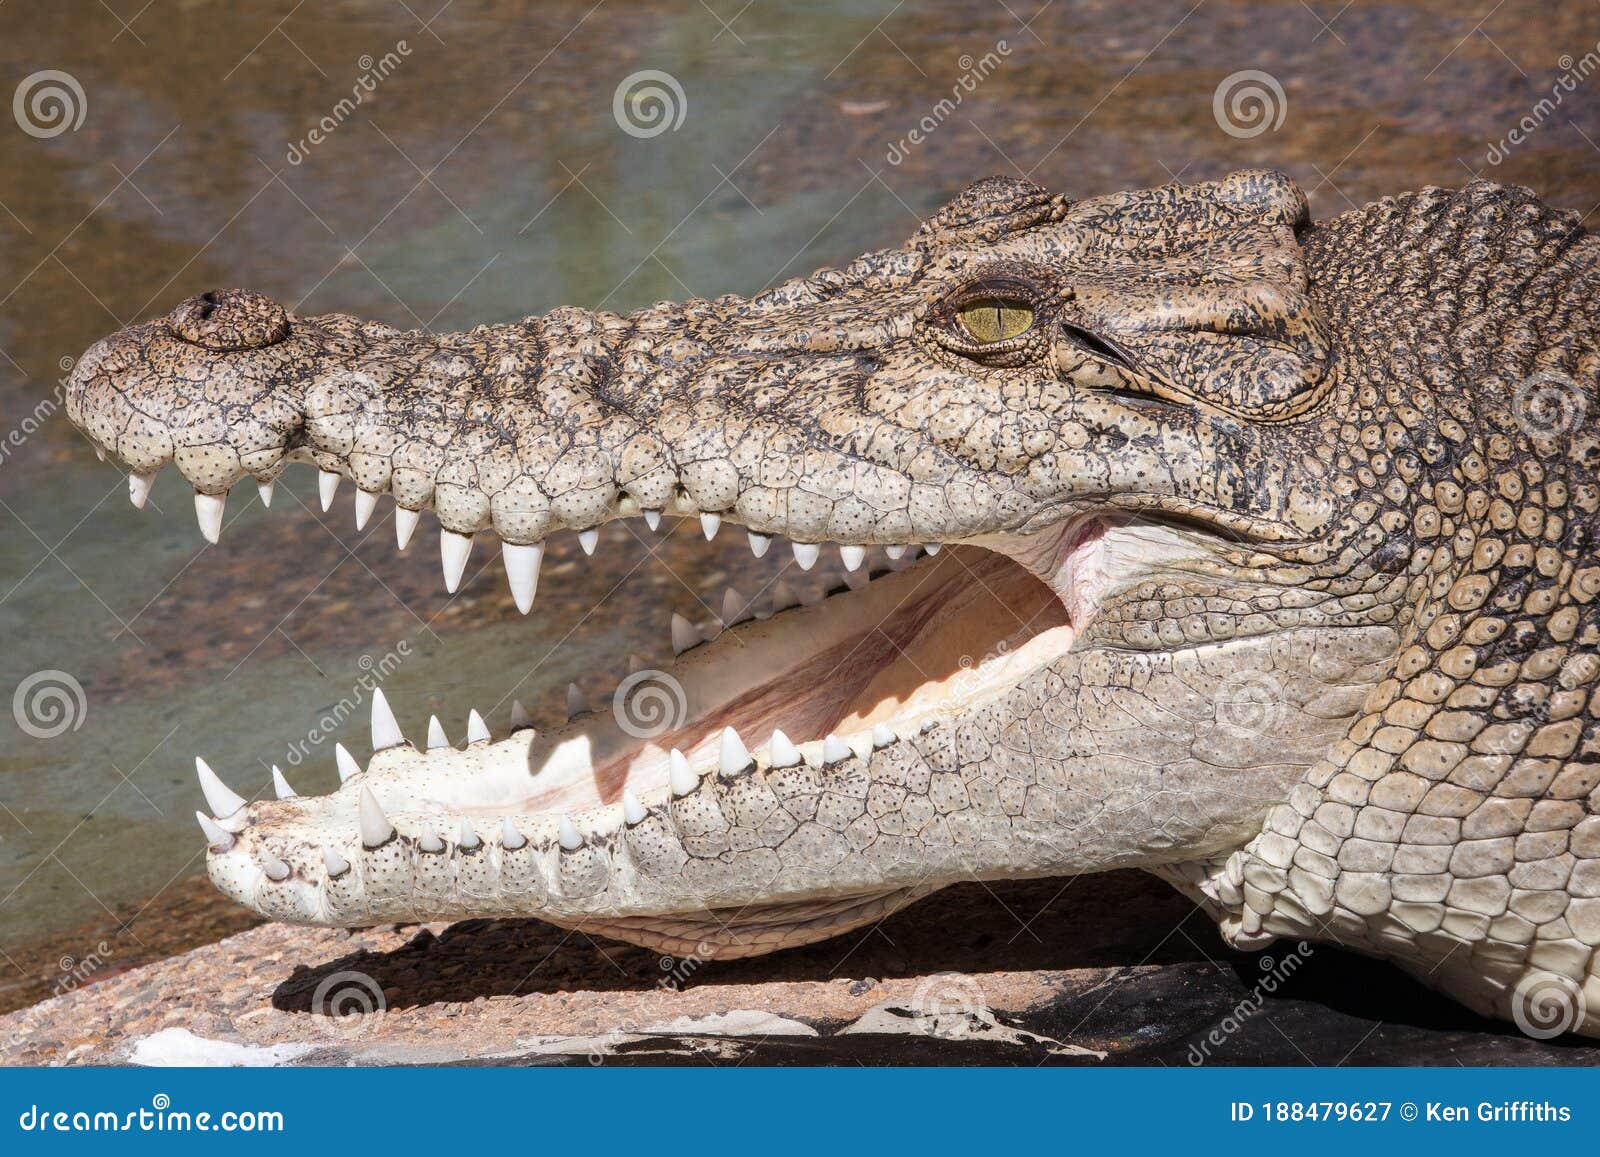 saltwater or estuarine crocodile